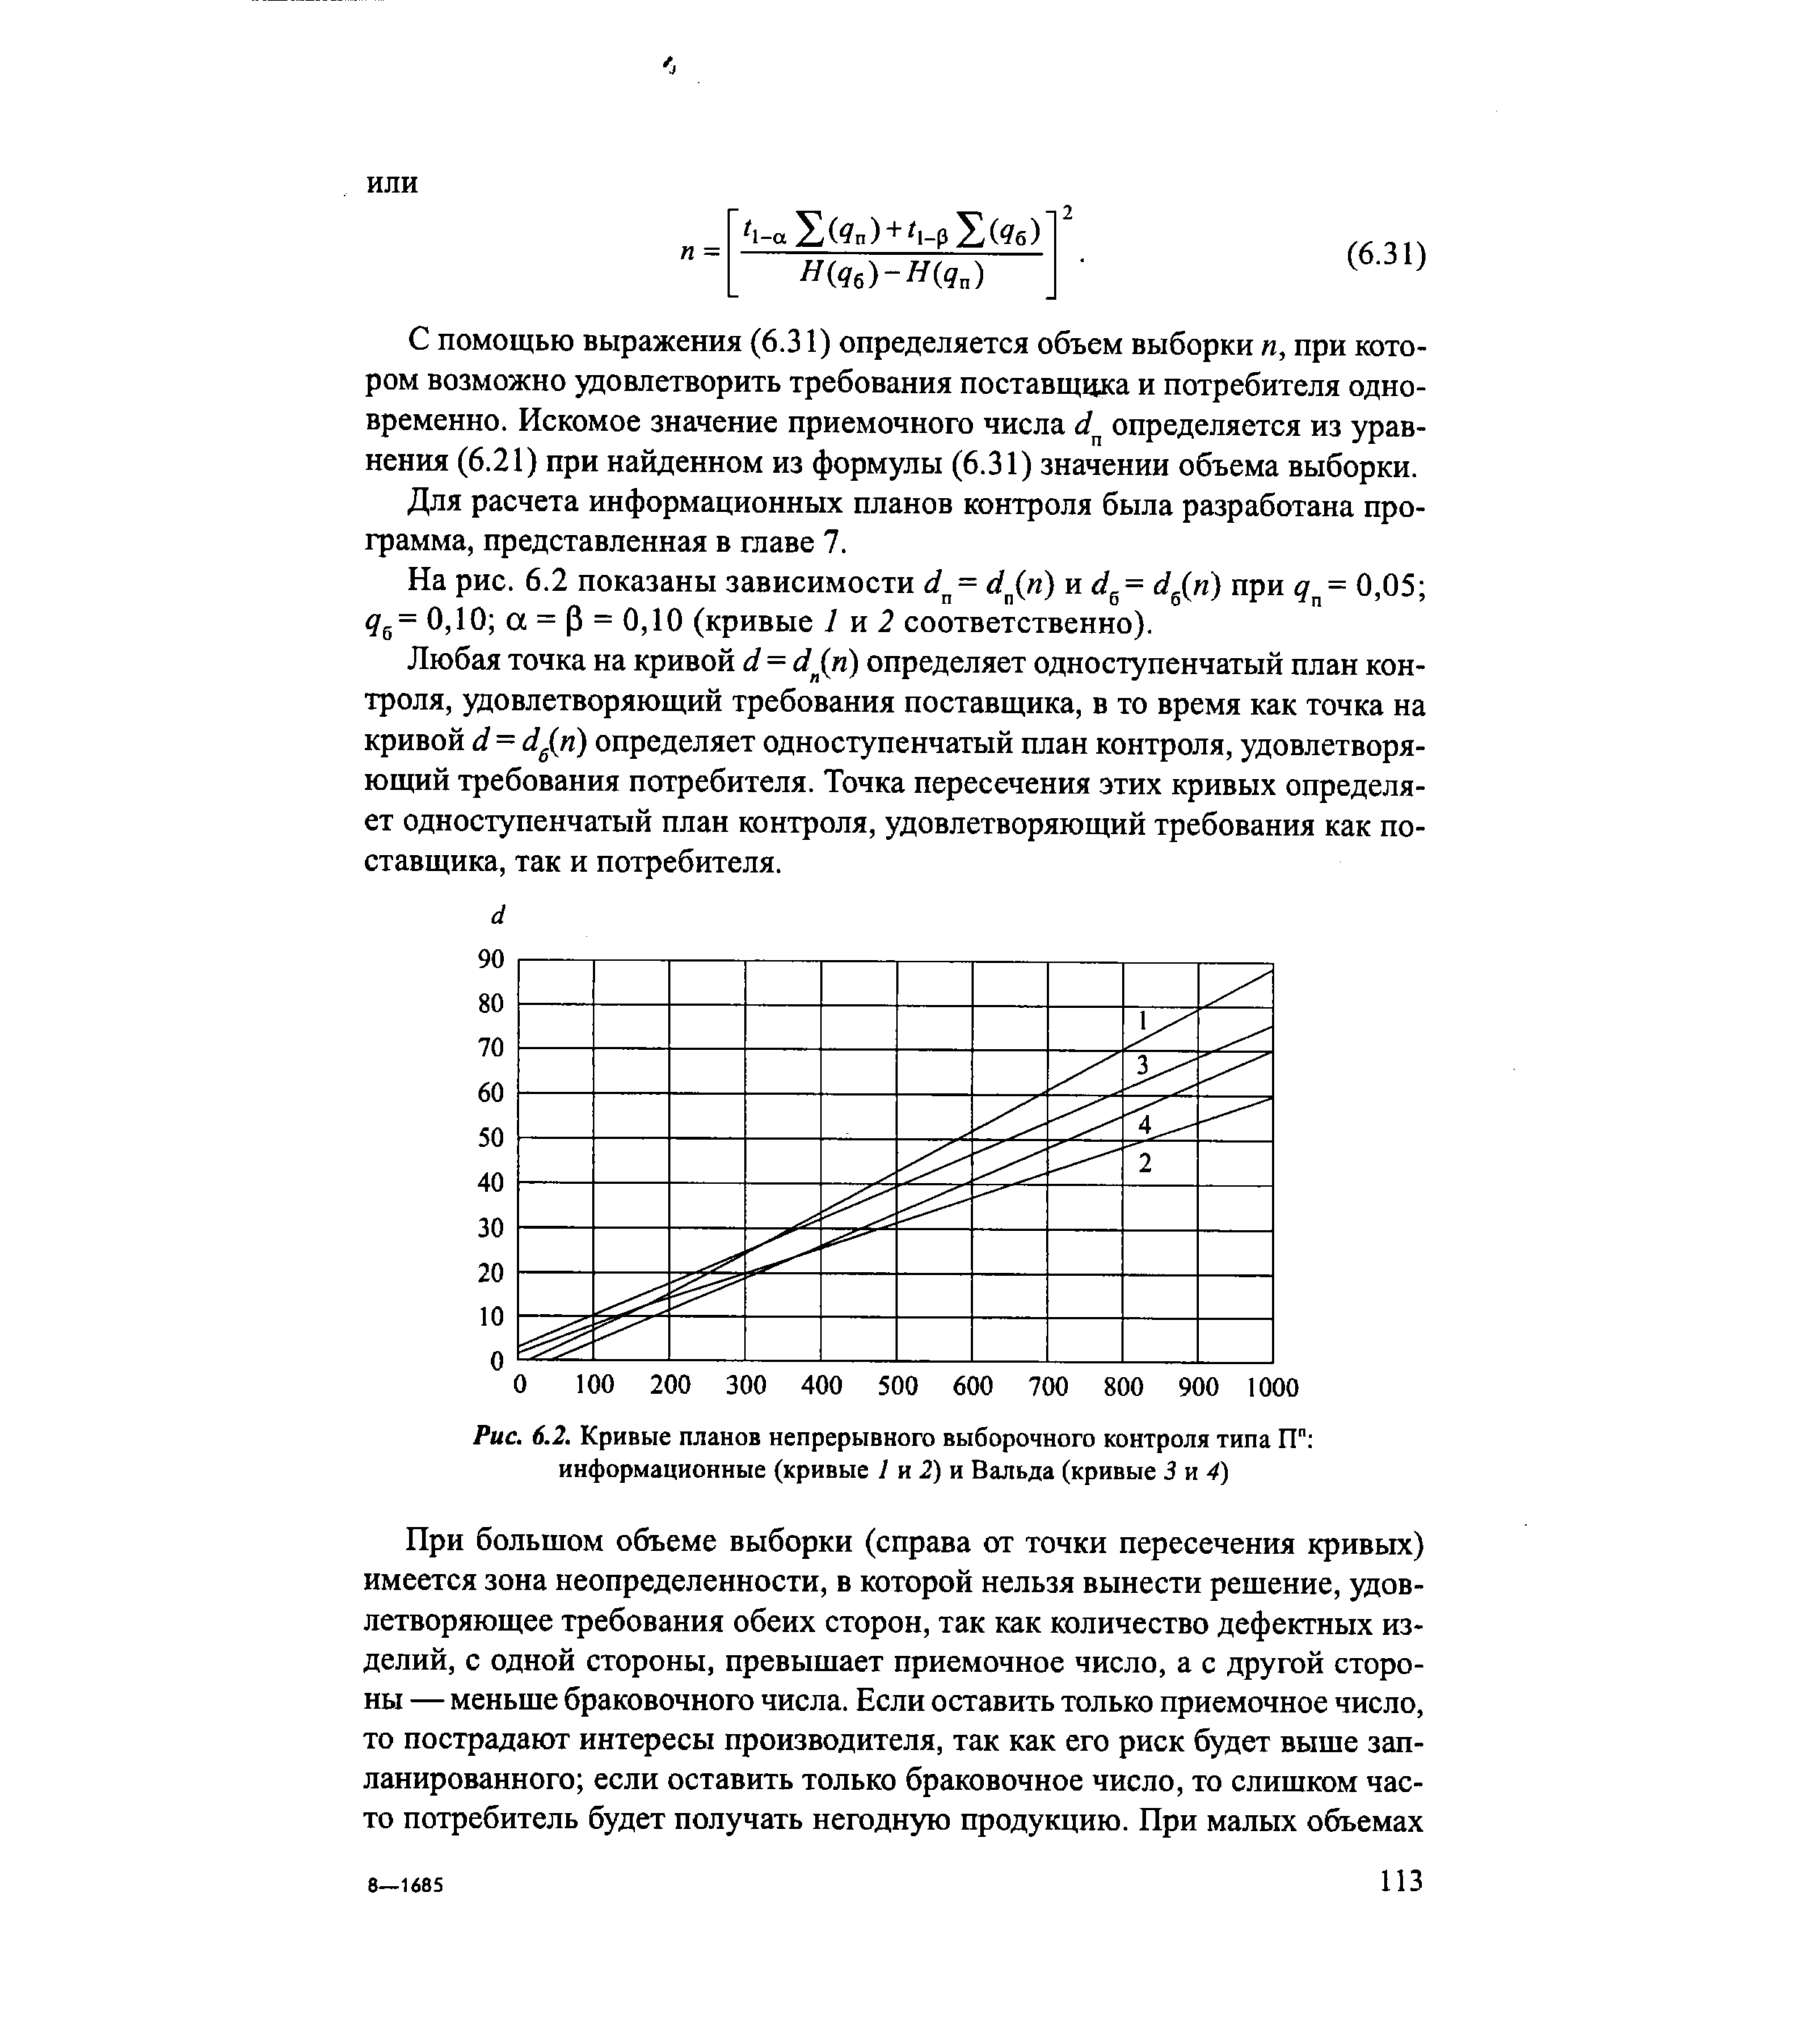 Рис. 6.2. Кривые планов непрерывного выборочного контроля типа ГГ информационные (кривые / и 2) и Вальда (кривые 3 и 4)
